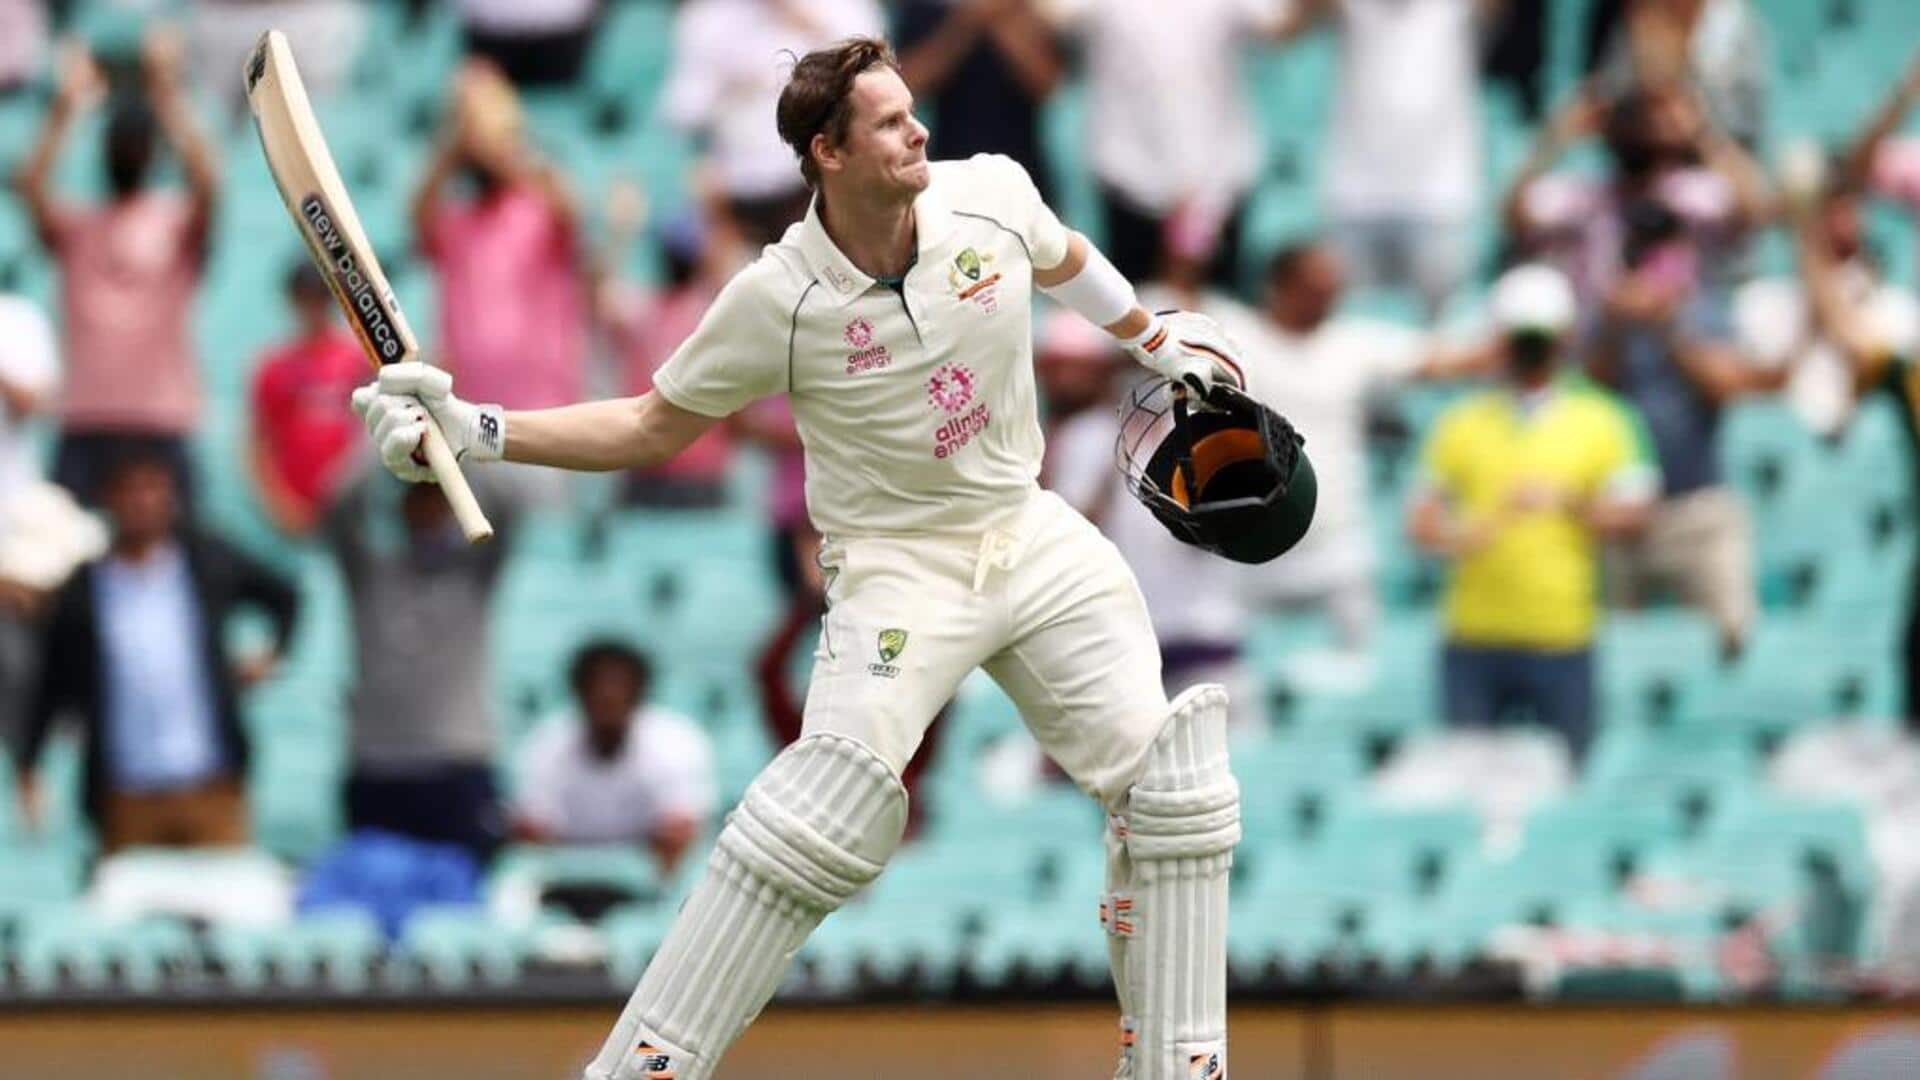 Steve Smith races past 1,000 Test runs against Pakistan: Stats